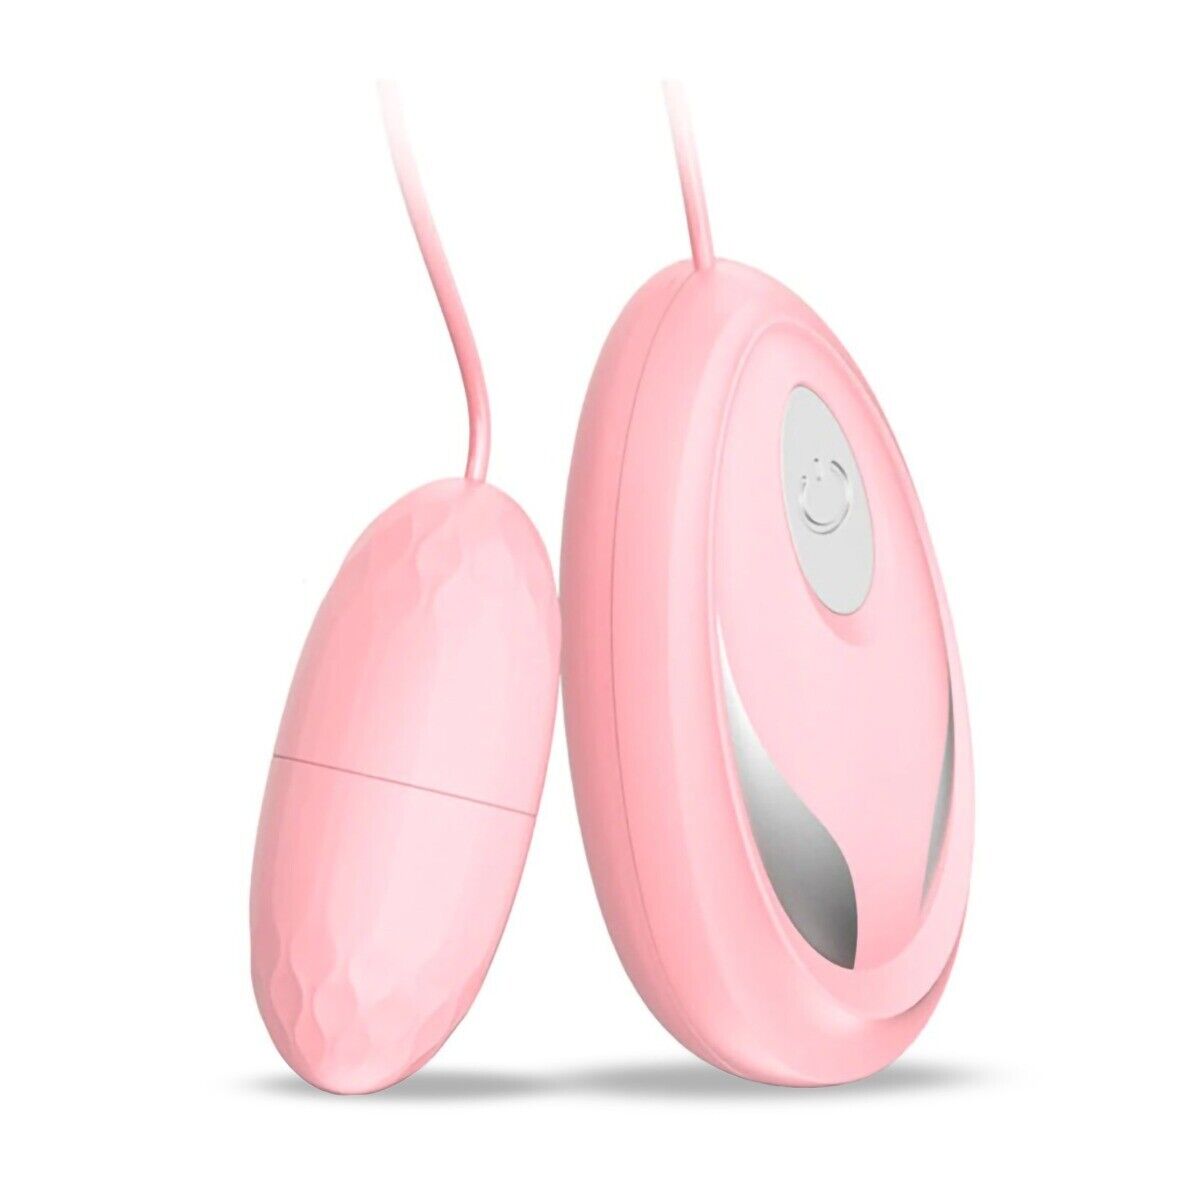 10 Speed Vibrating Egg Bullet G-spot Clit Anal Vibe Vibrator Sex Toys for Women